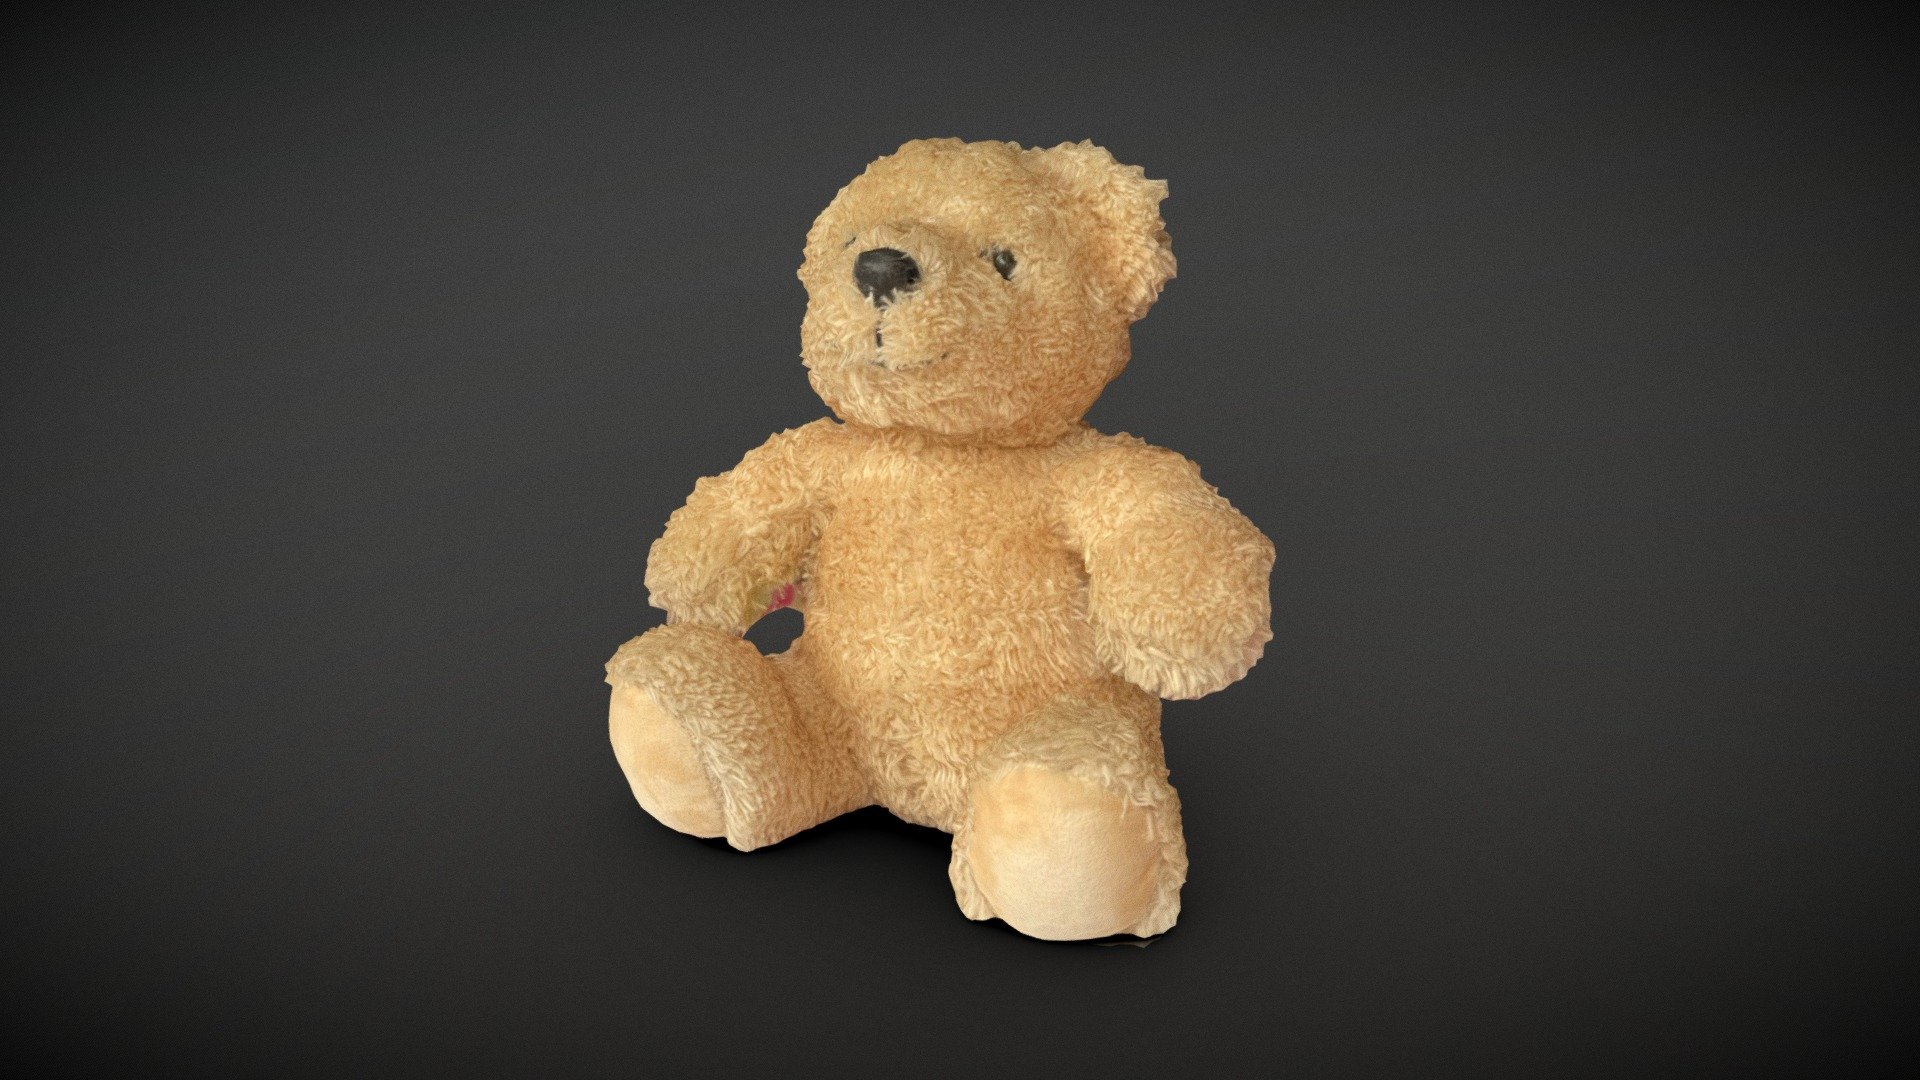 Toy Muppet bear - Teddy bear - Buy Royalty Free 3D model by xinige (@l13261404616) 3d model